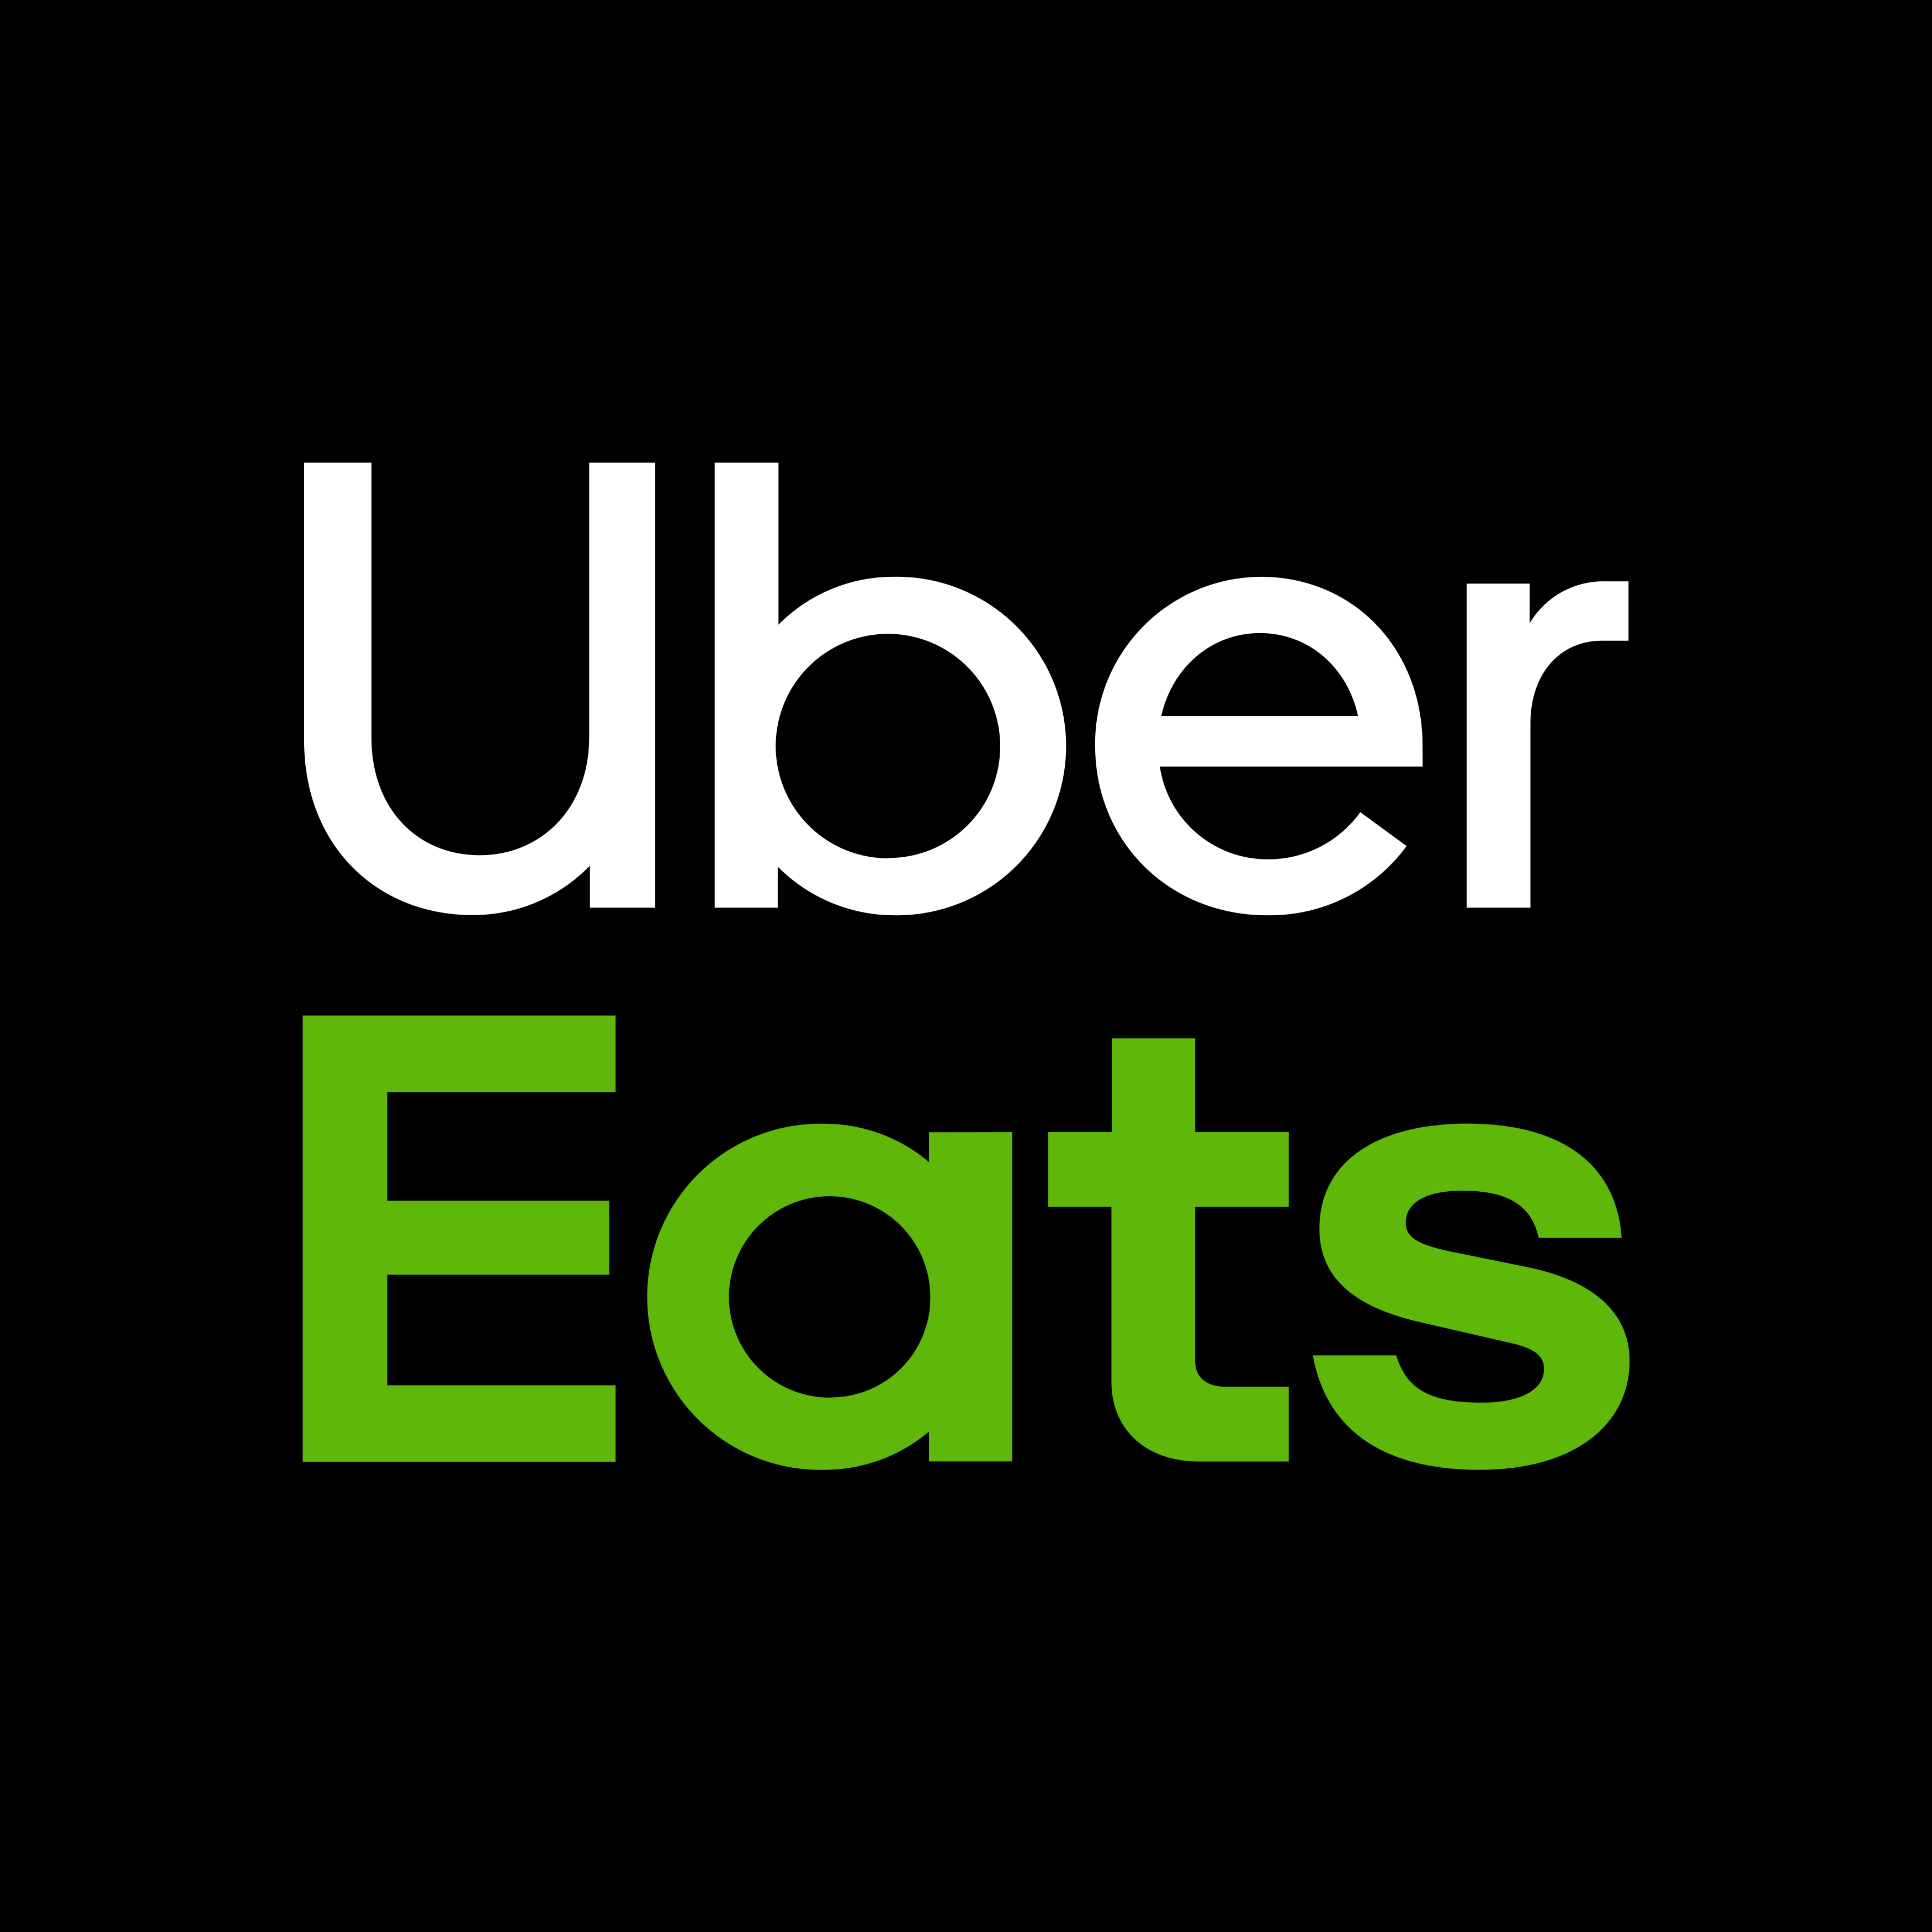 uber eats logo 1 - Uber Eats Logo